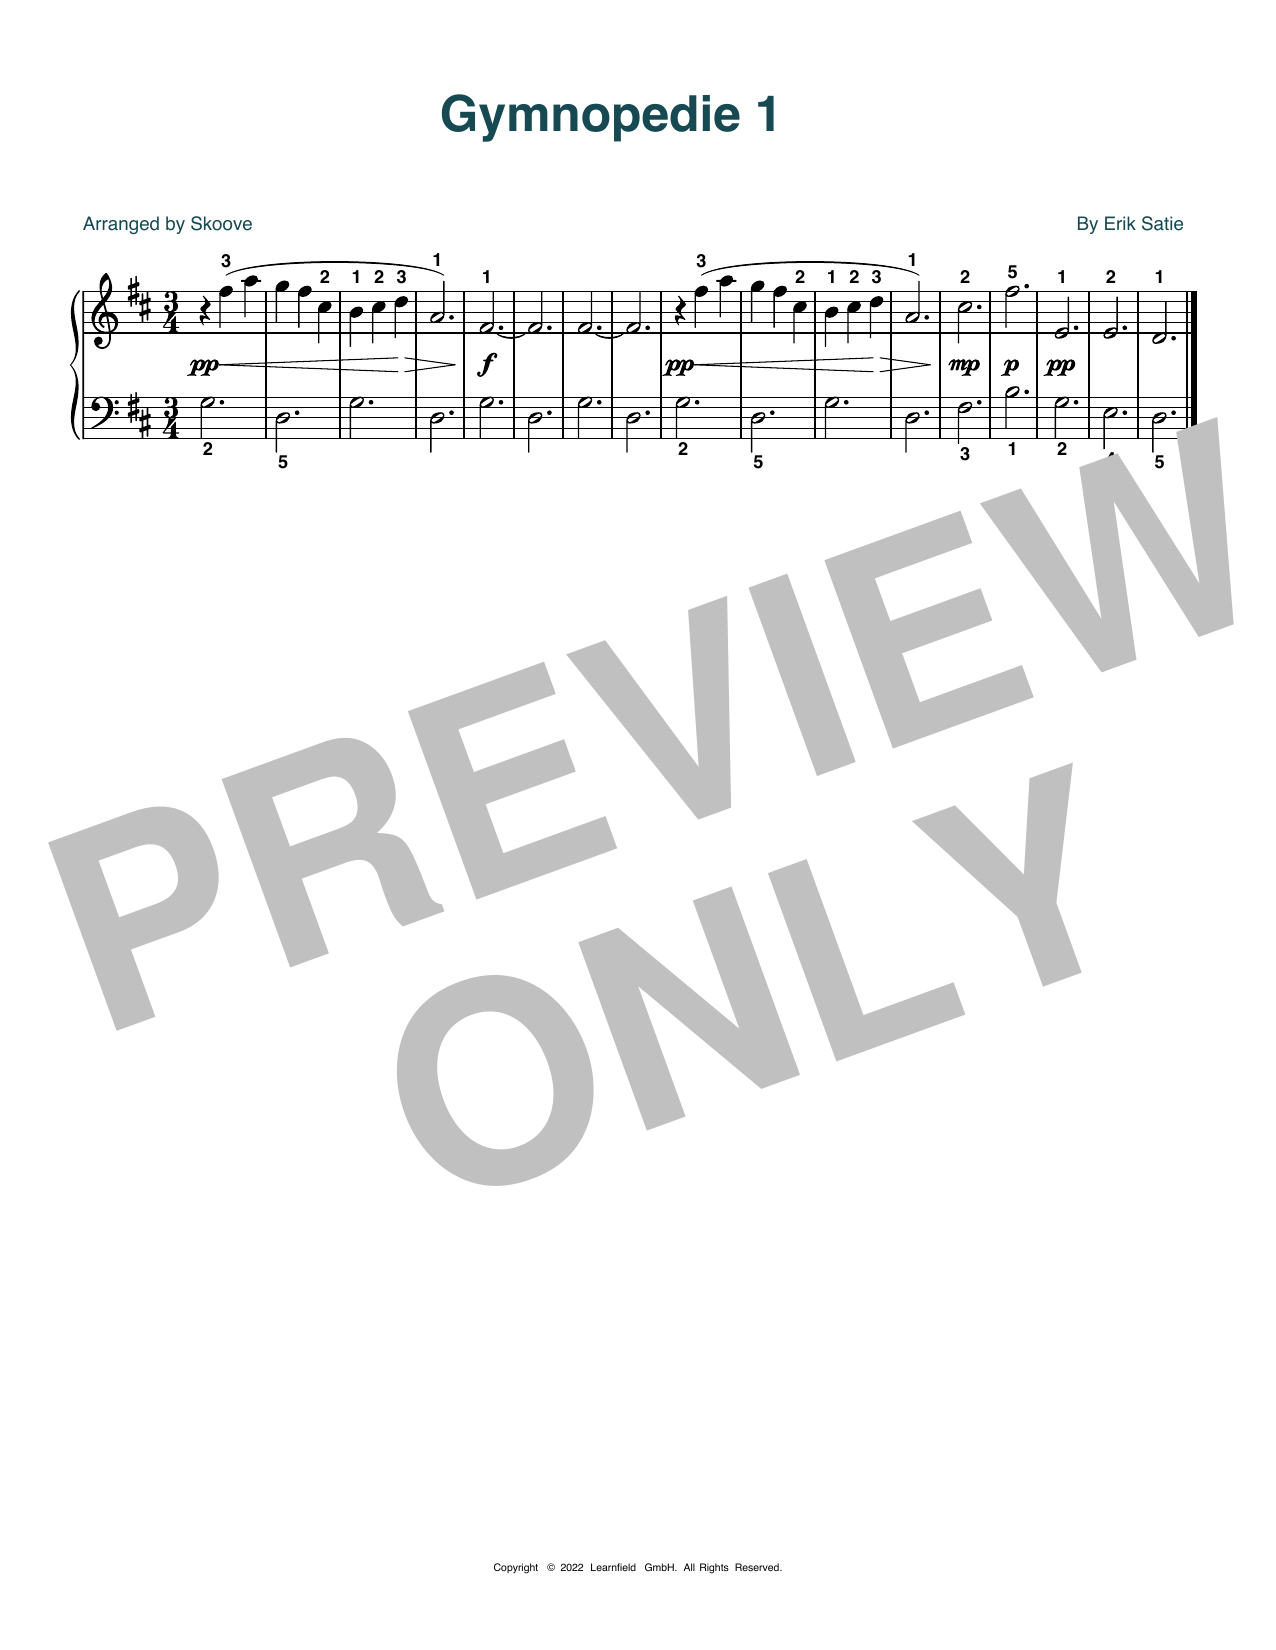 Download Erik Satie Gymnopedie No. 1 (arr. Skoove) Sheet Music